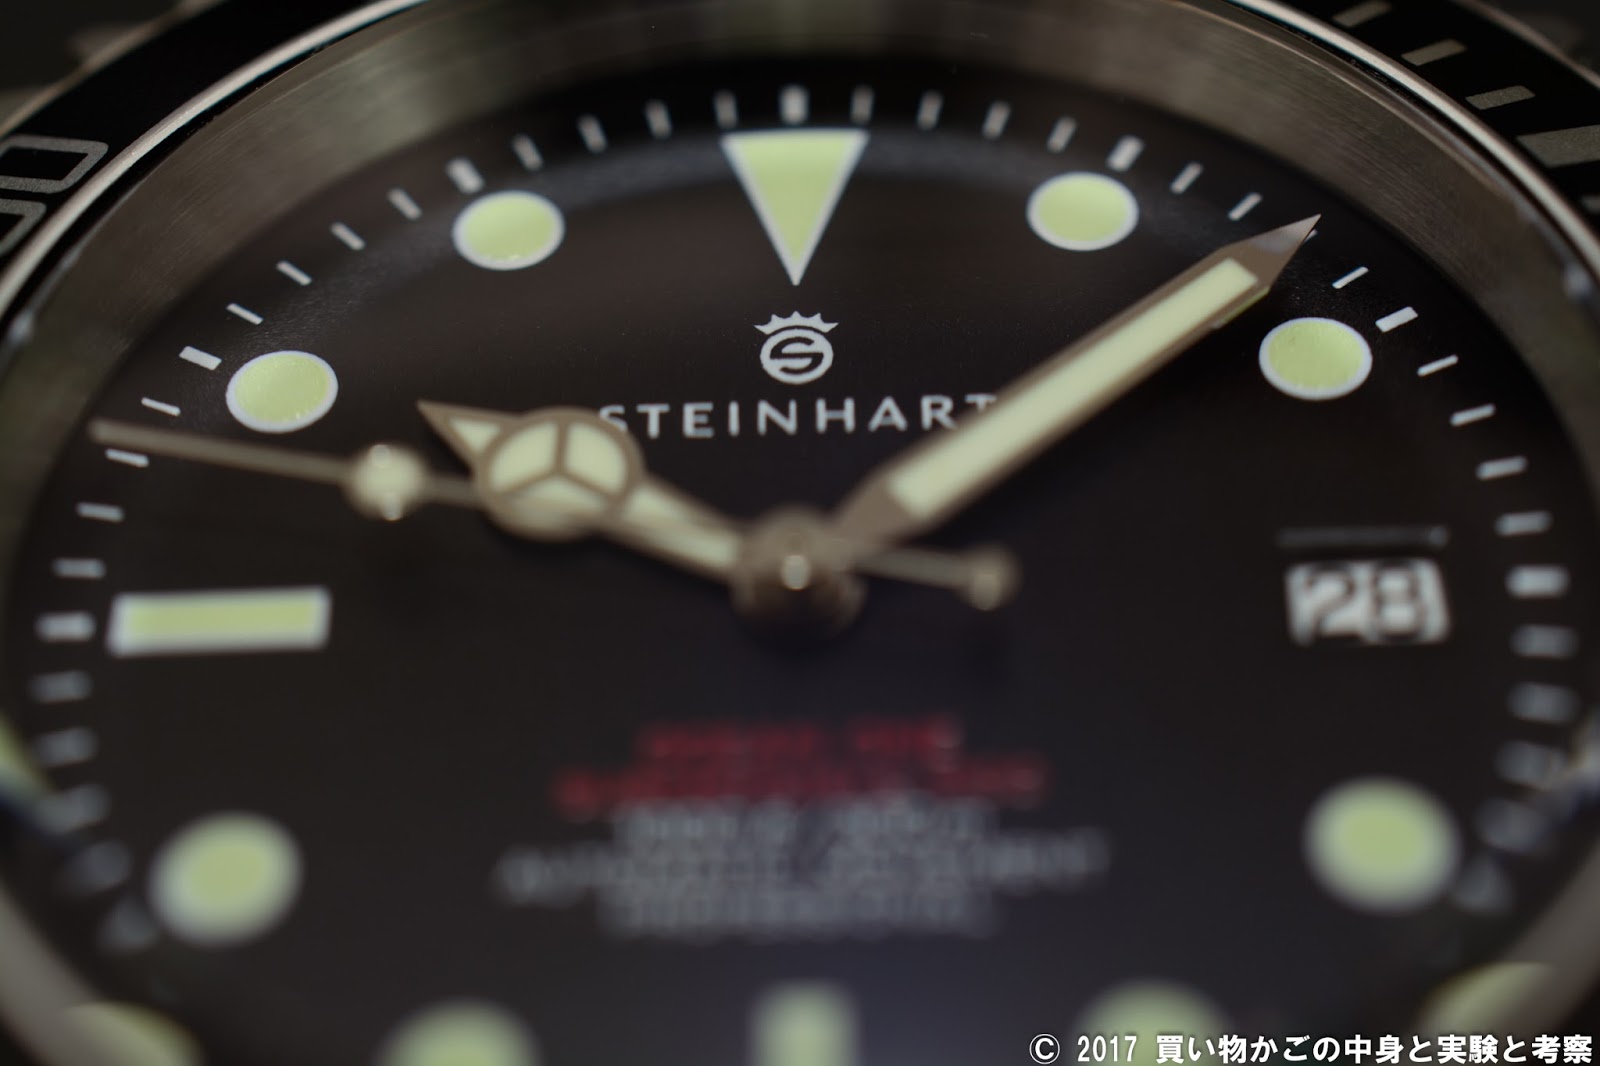 【腕時計】Steinhartが39mmのダイバーズウォッチを発売するってよ